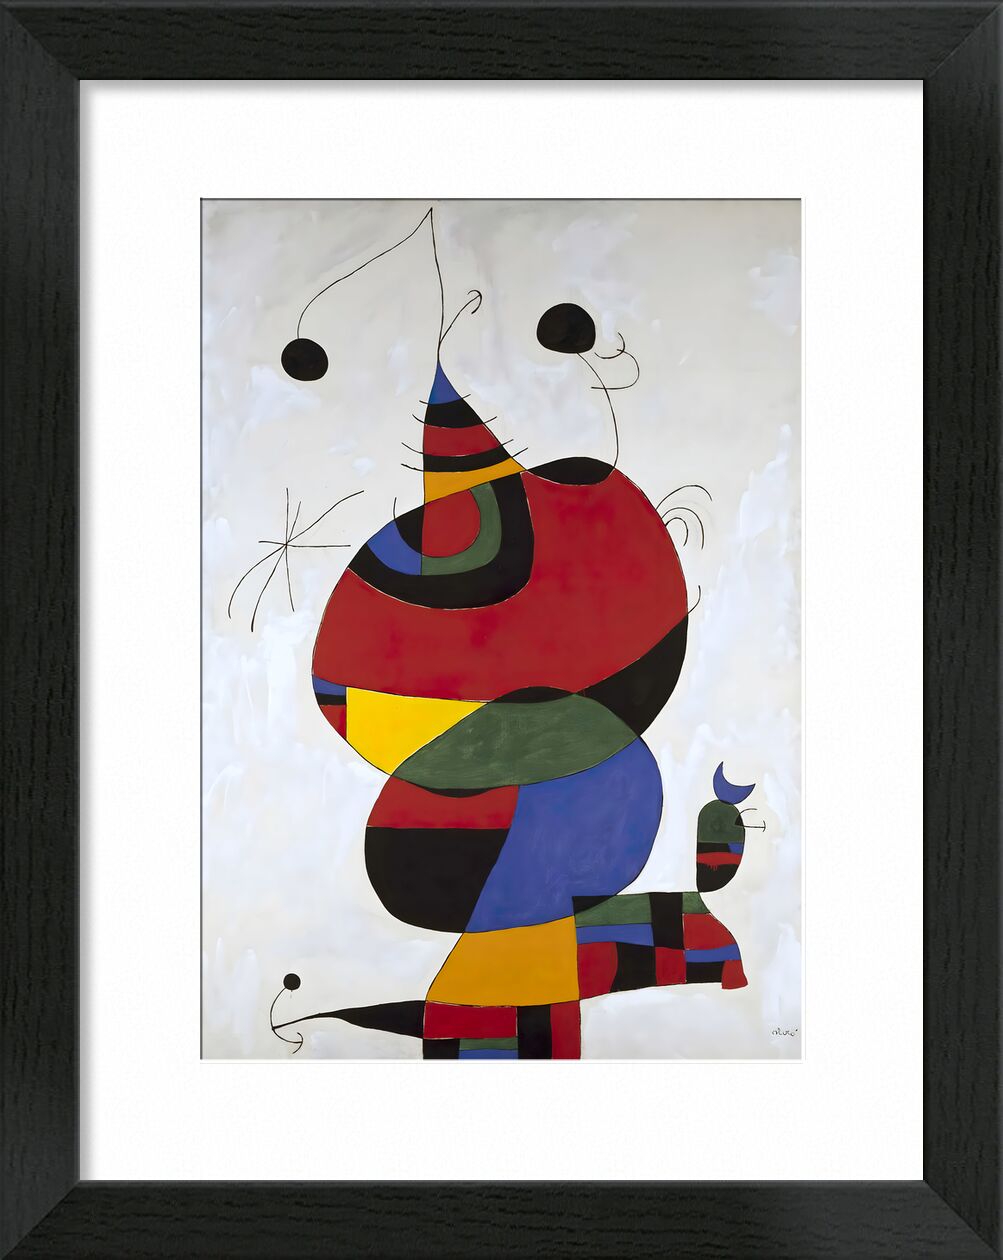 Hommage a Picasso - Joan Miró von Bildende Kunst, Prodi Art, Picasso, Porträt, Bleistiftzeichnung, Joan Miró, Tribut